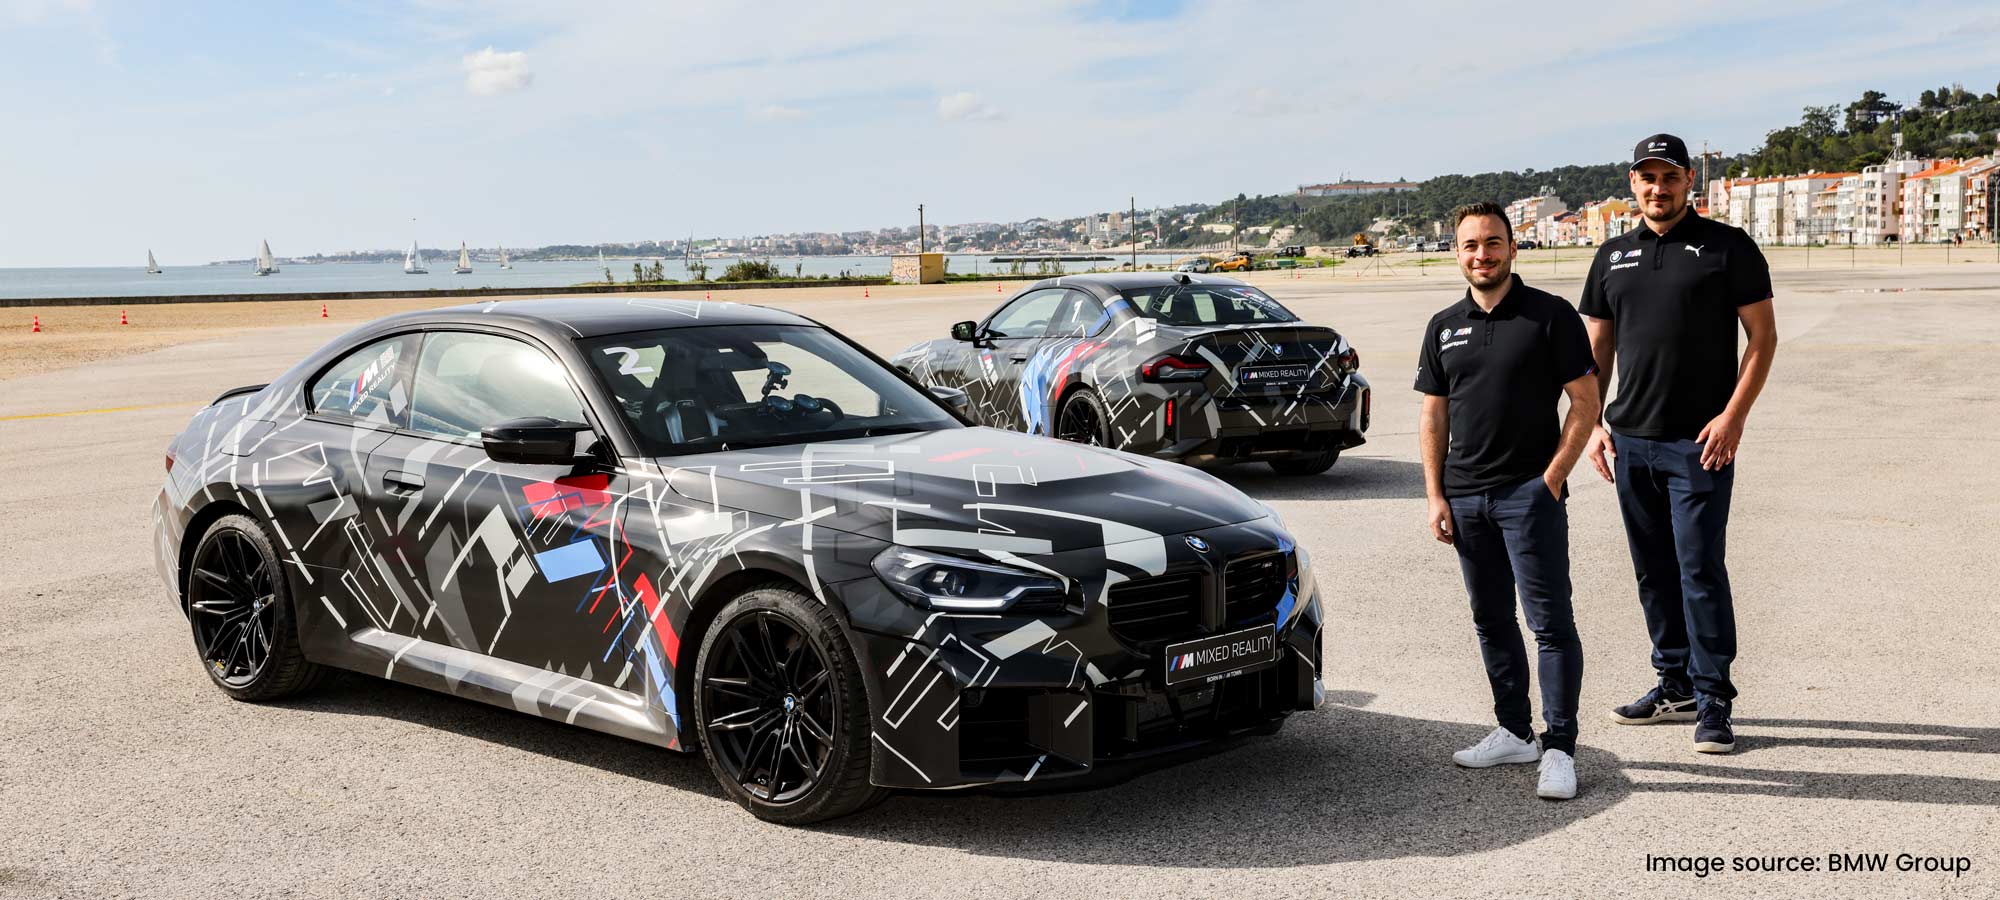 Zwei MaibornWolff Mitglieden posen neben ein BMW Wagen